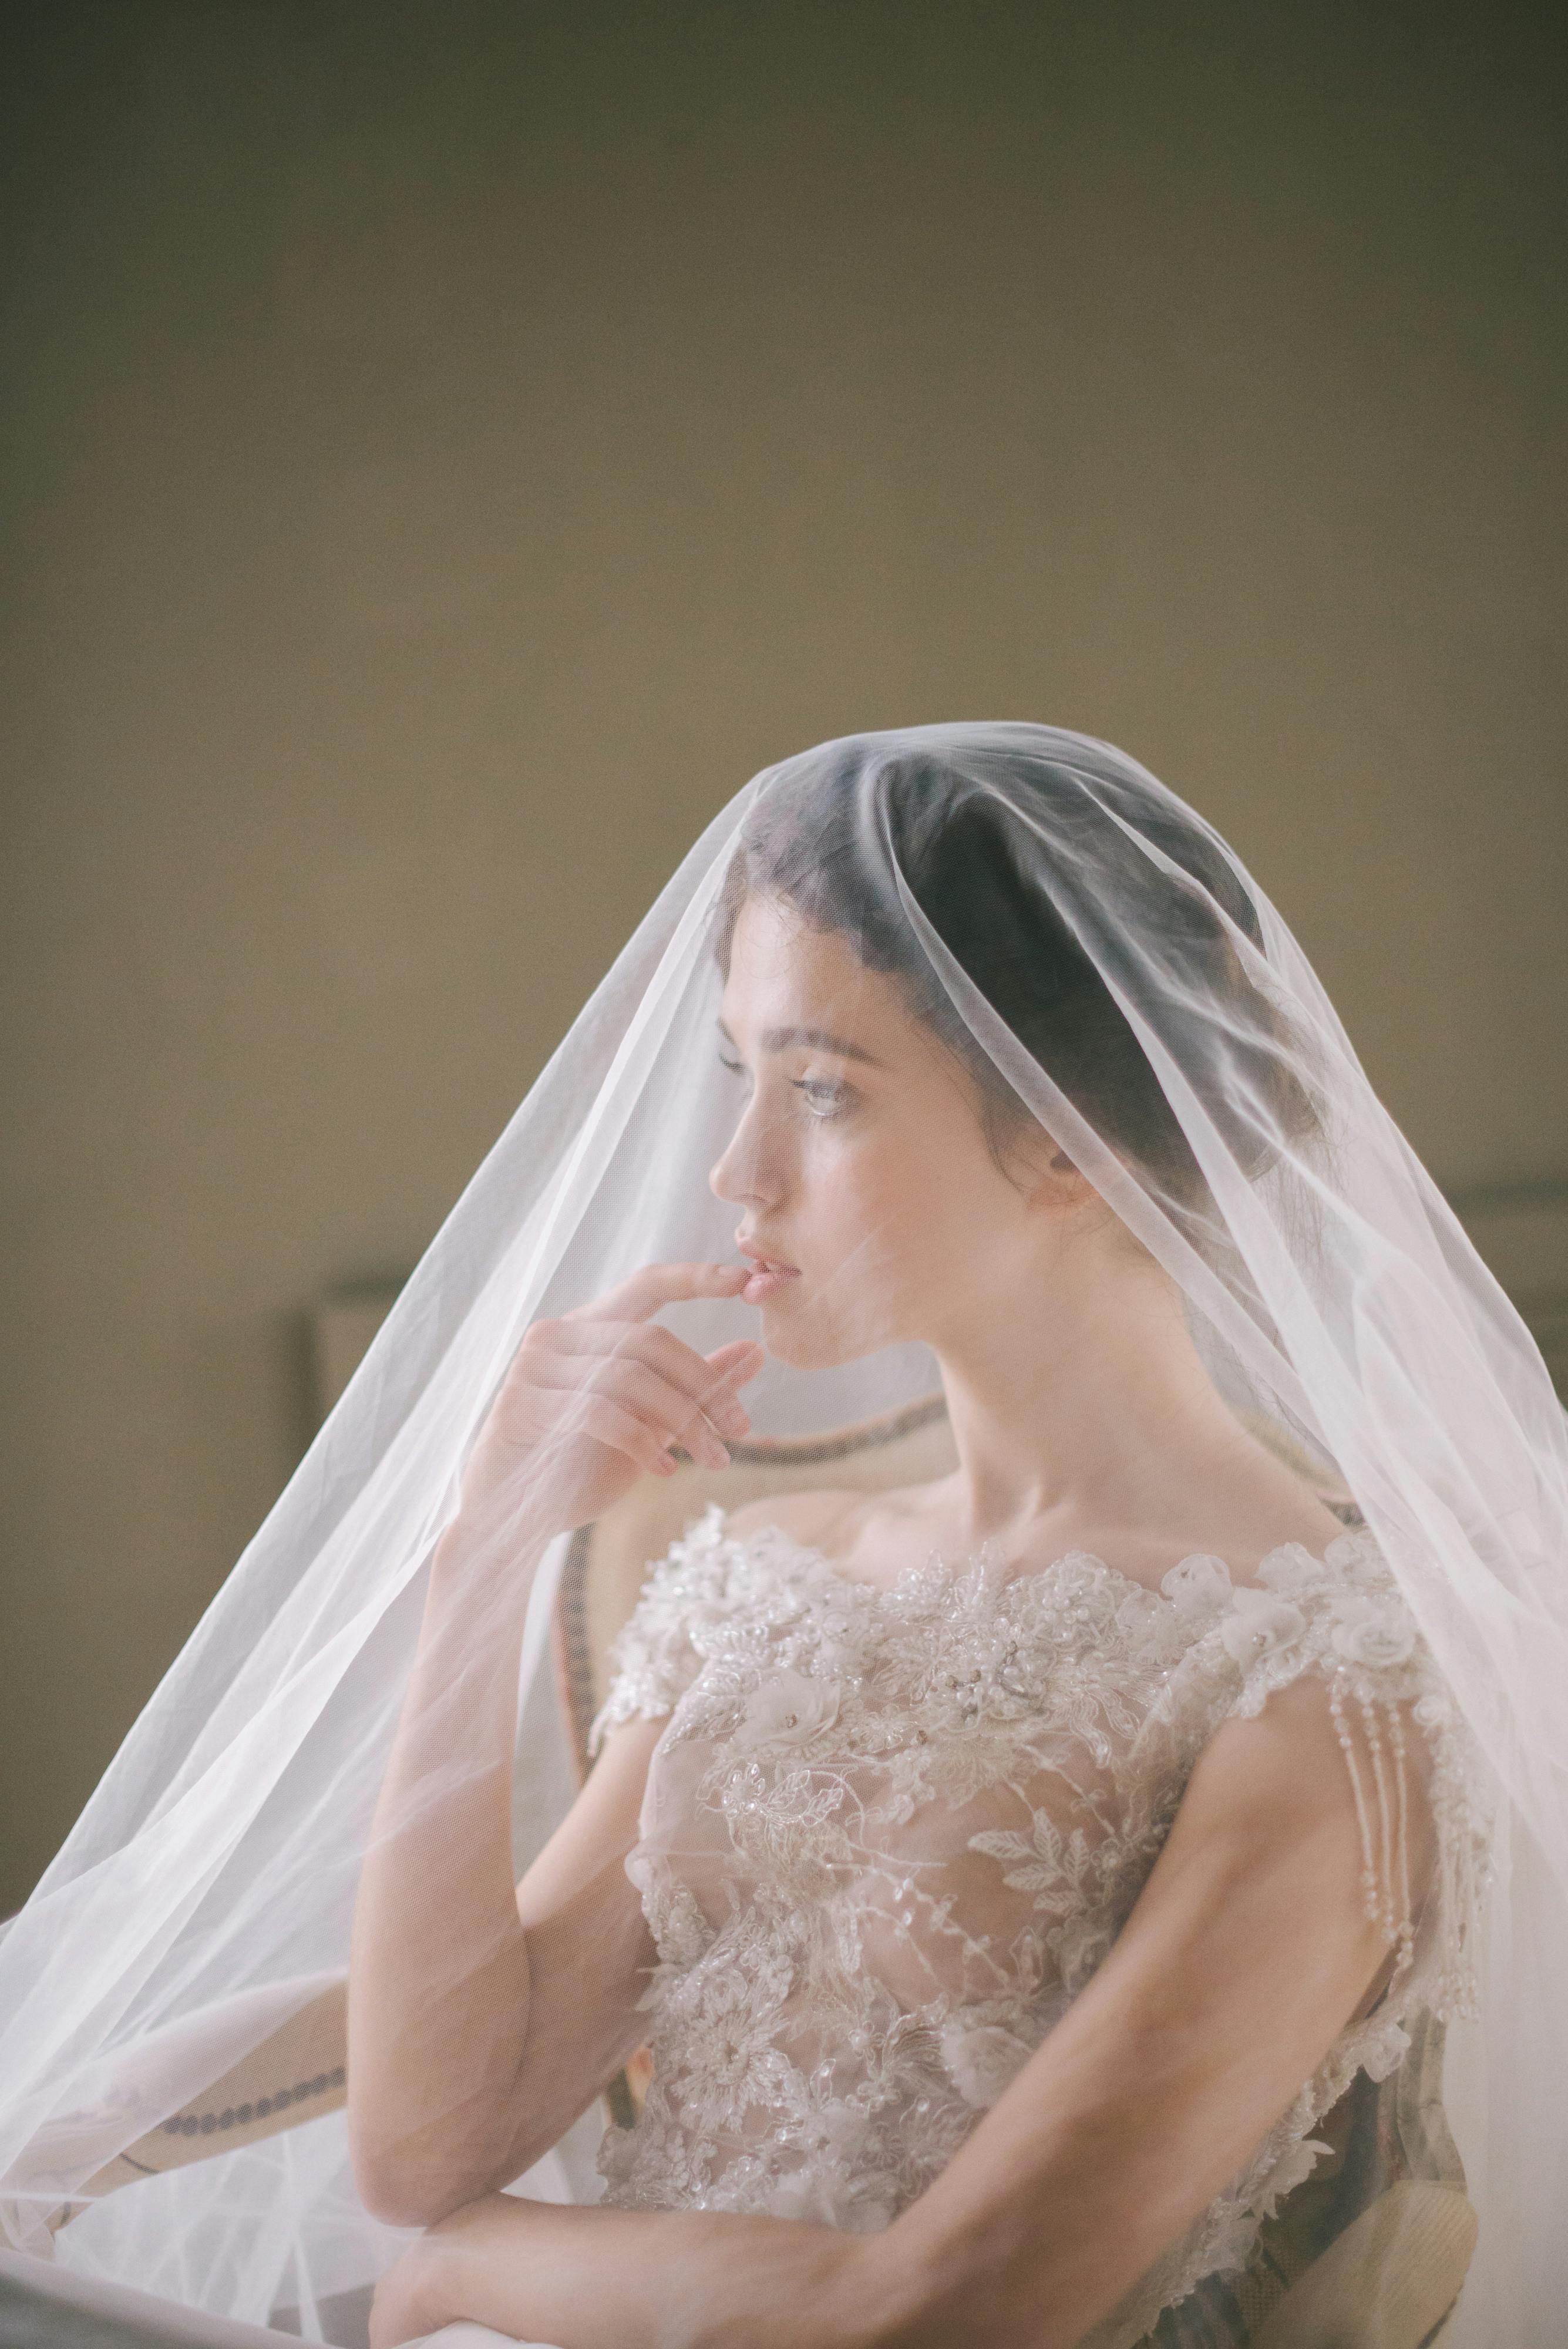 Une mariée vêtue d'une belle robe pense à son mariage à venir | Source : Pexels